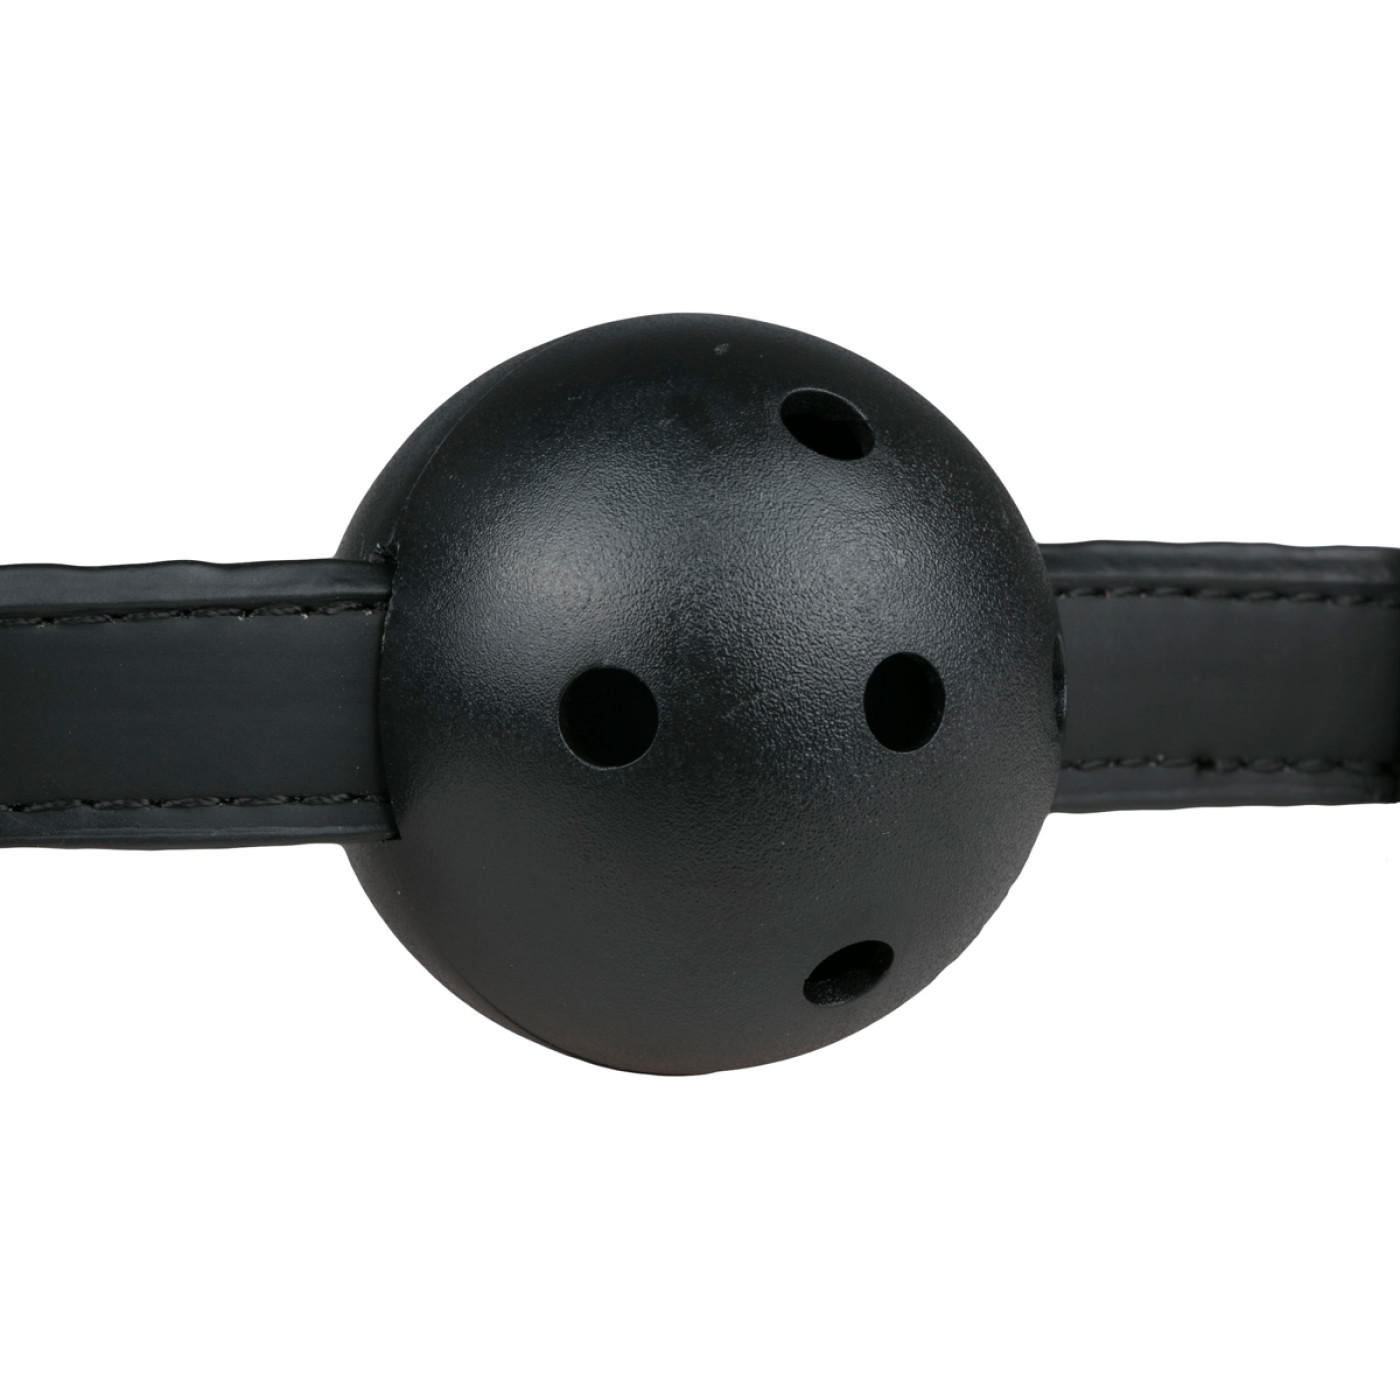 Ball Gag With PVC Ball - Black - Image 4.